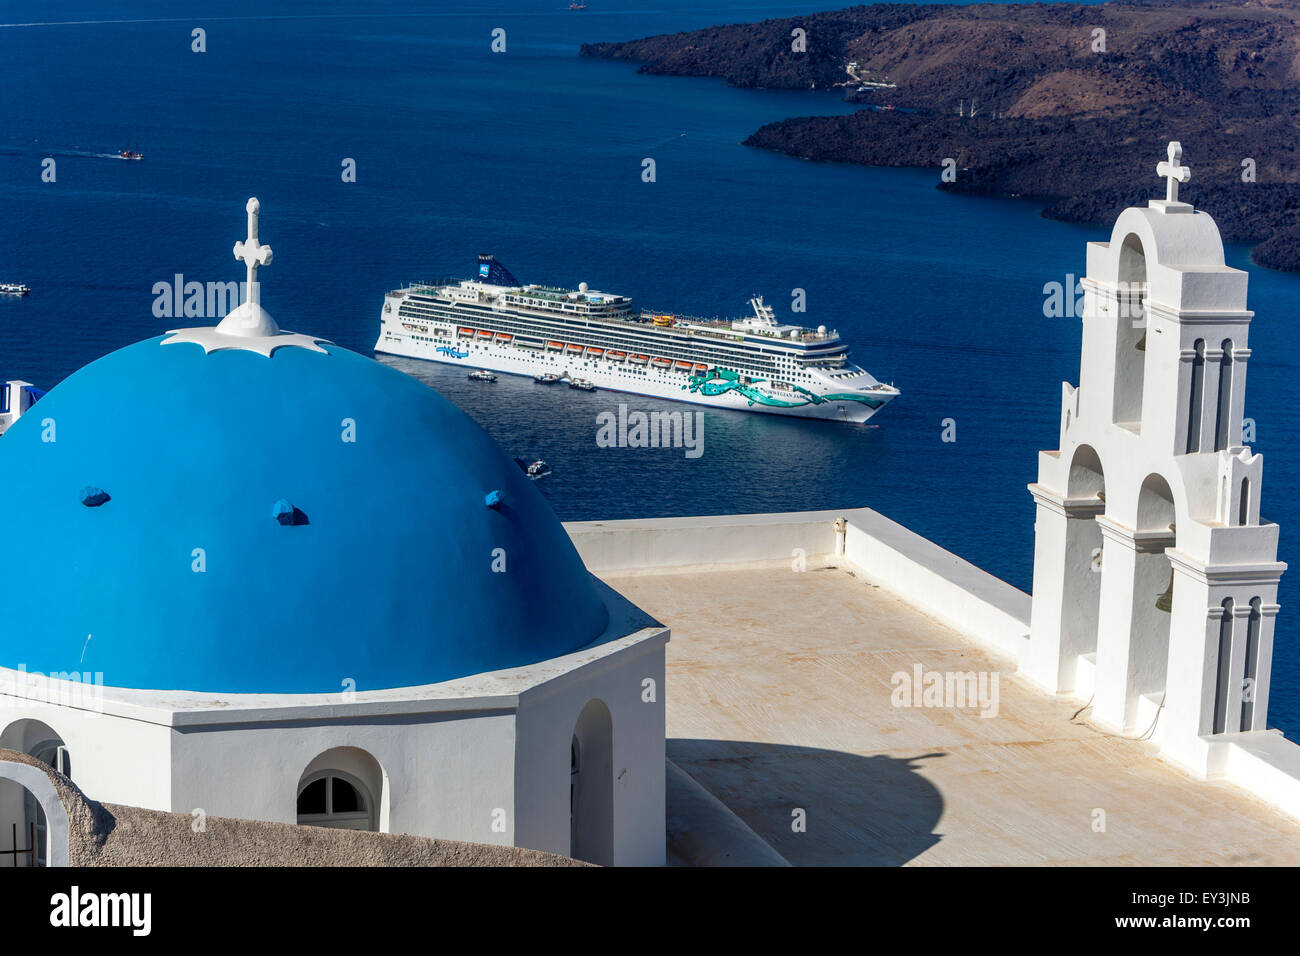 Santorini blaue Kuppel und Glockenturm über dem Meer Firostefani Santorini, griechische Insel Griechenland Inseln und festgemacht Kreuzfahrtschiff Stockfoto